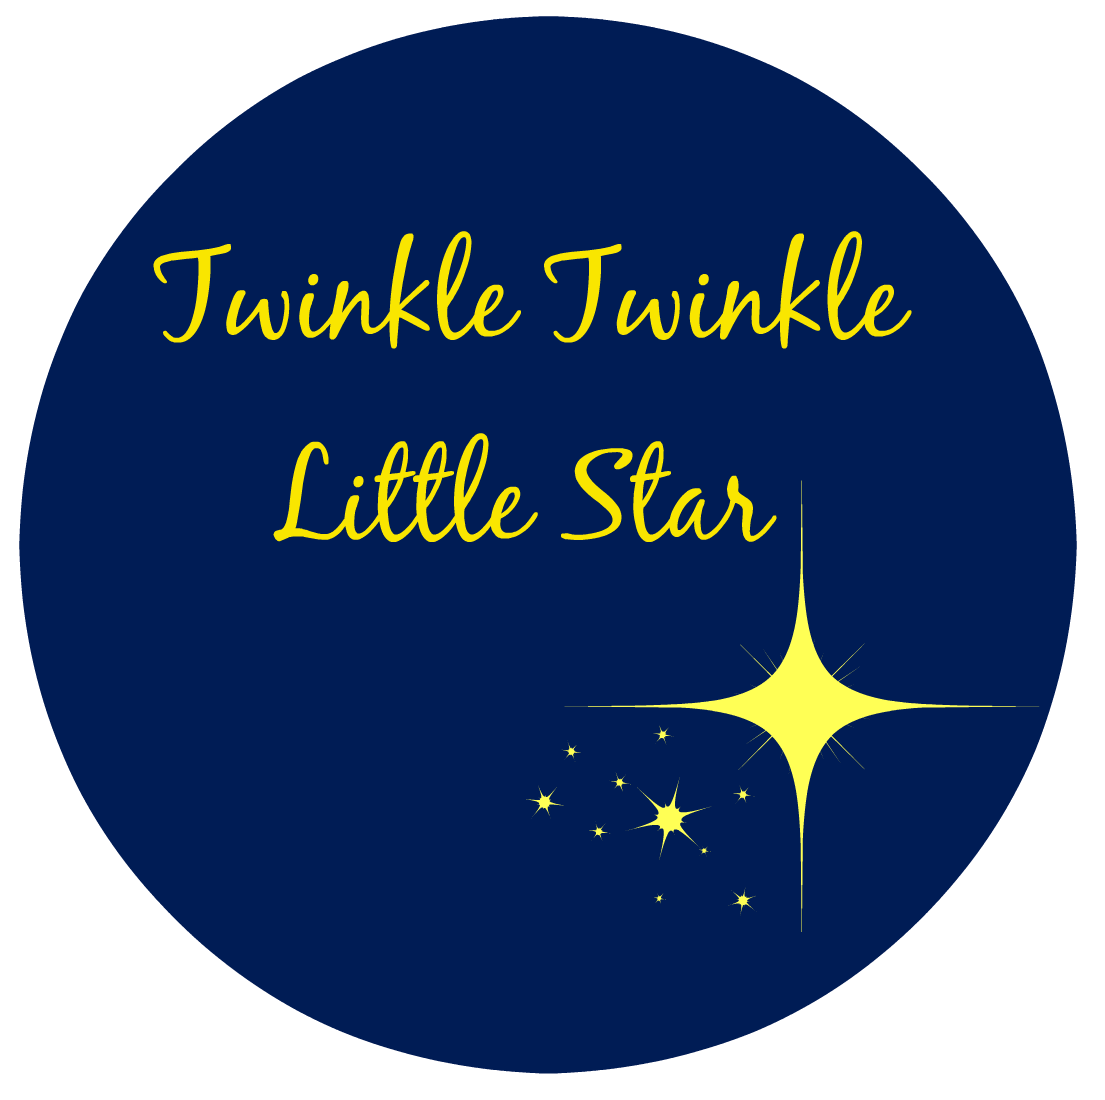 Twinkle Twinkle Baby Shower Ideas